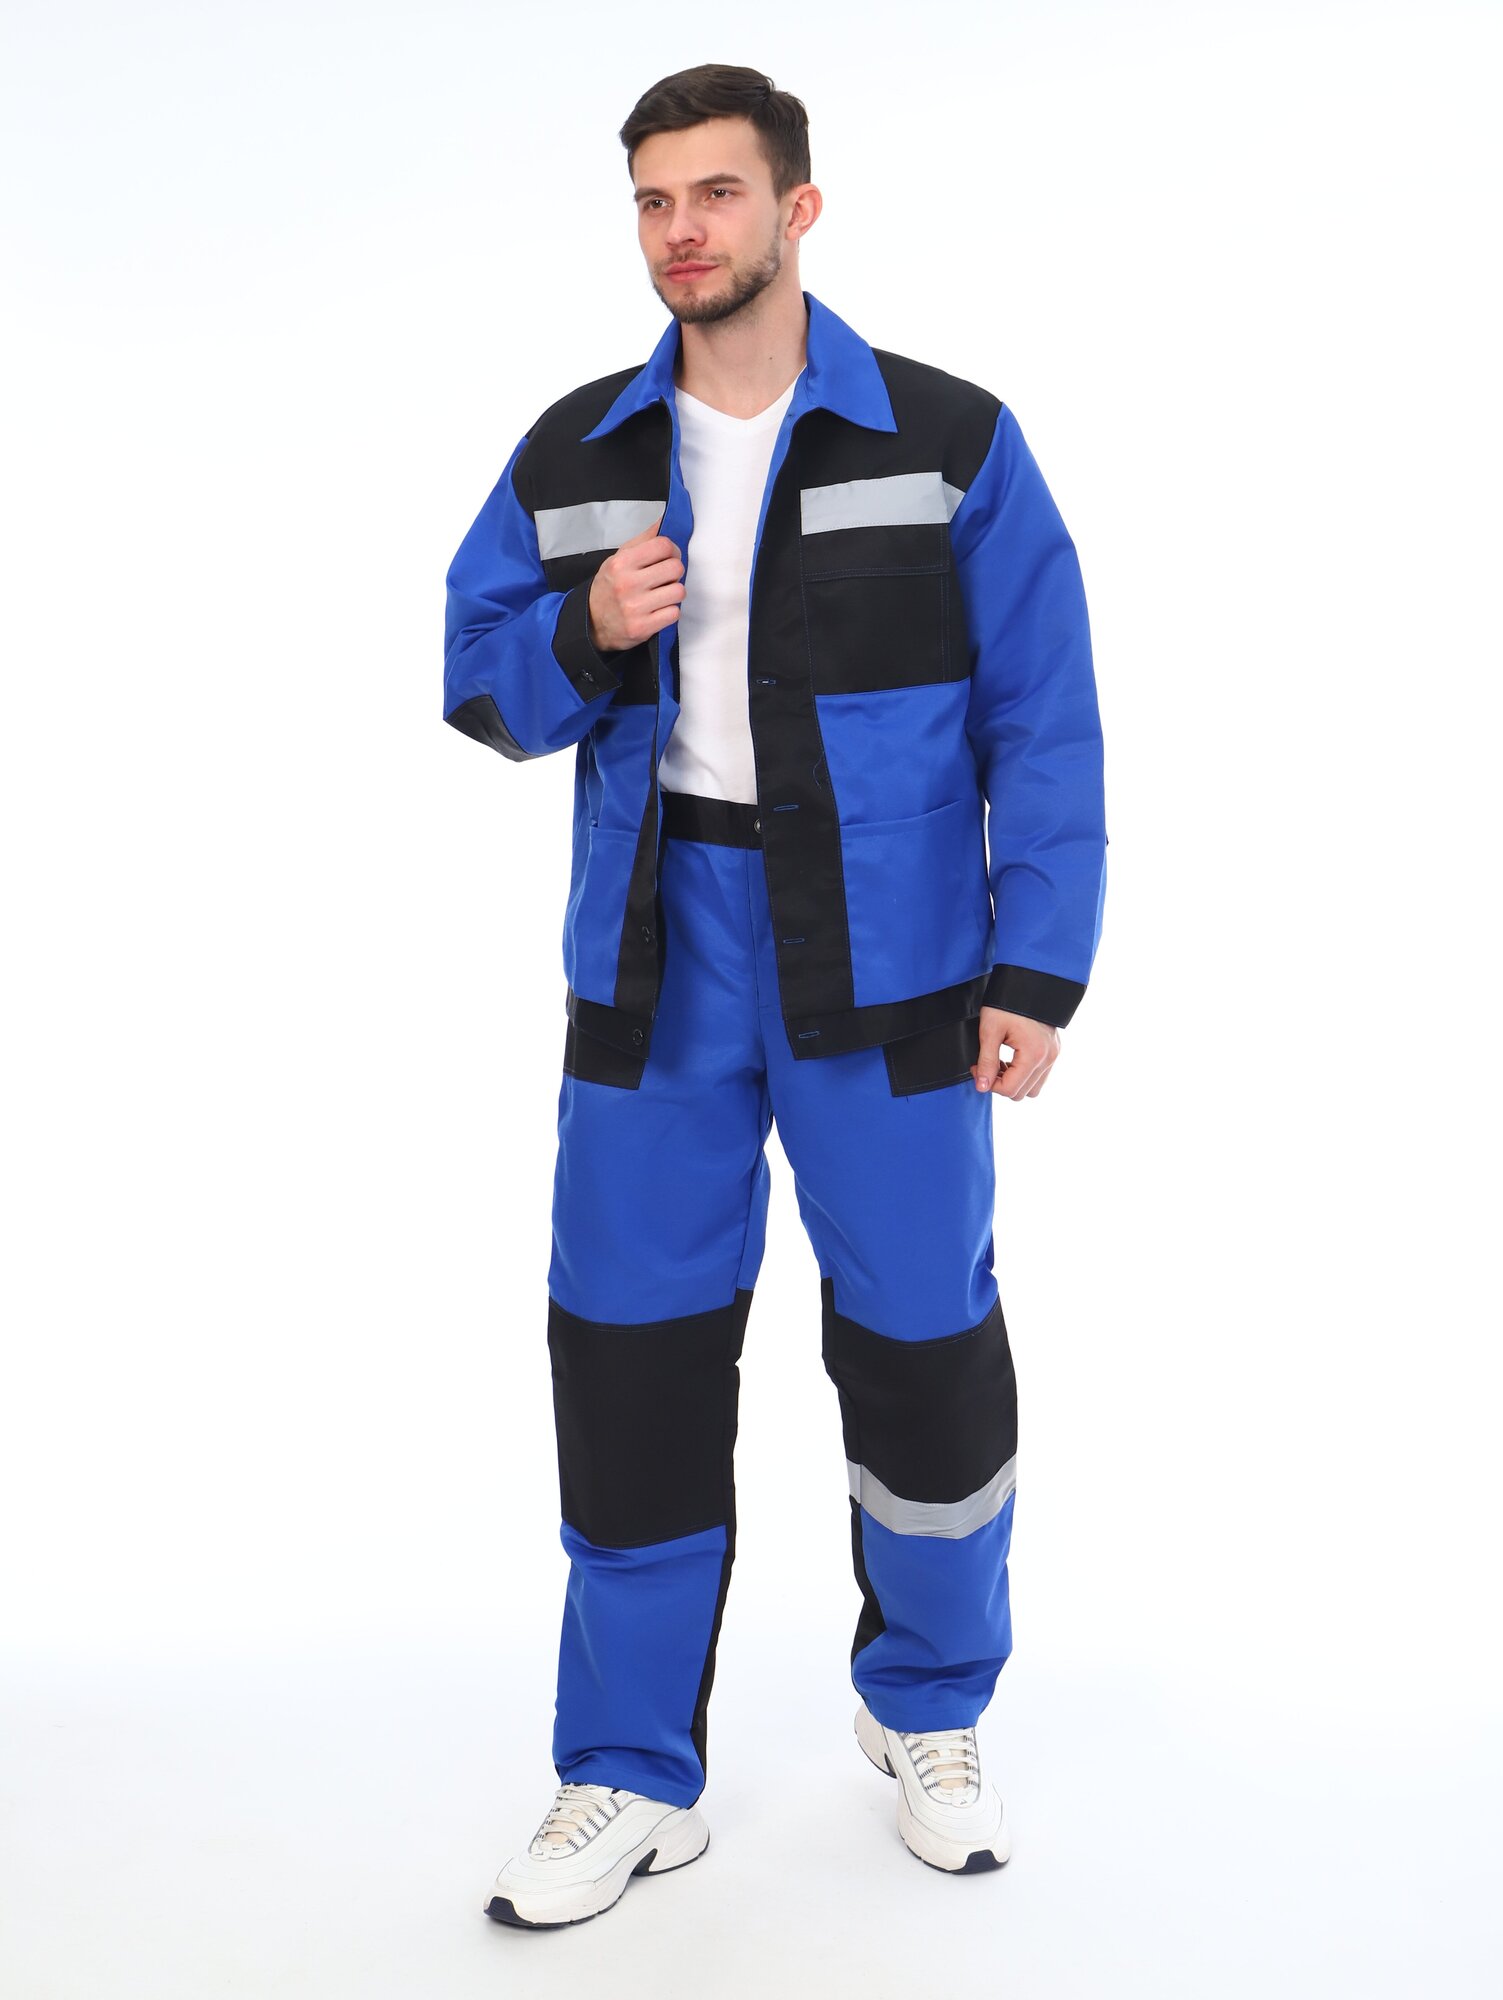 Костюм мужской рабочий (куртка + брюки), спецовка для ремонта, строительства, дачи, цвет синий/черный, размер 48-50 (182-188)